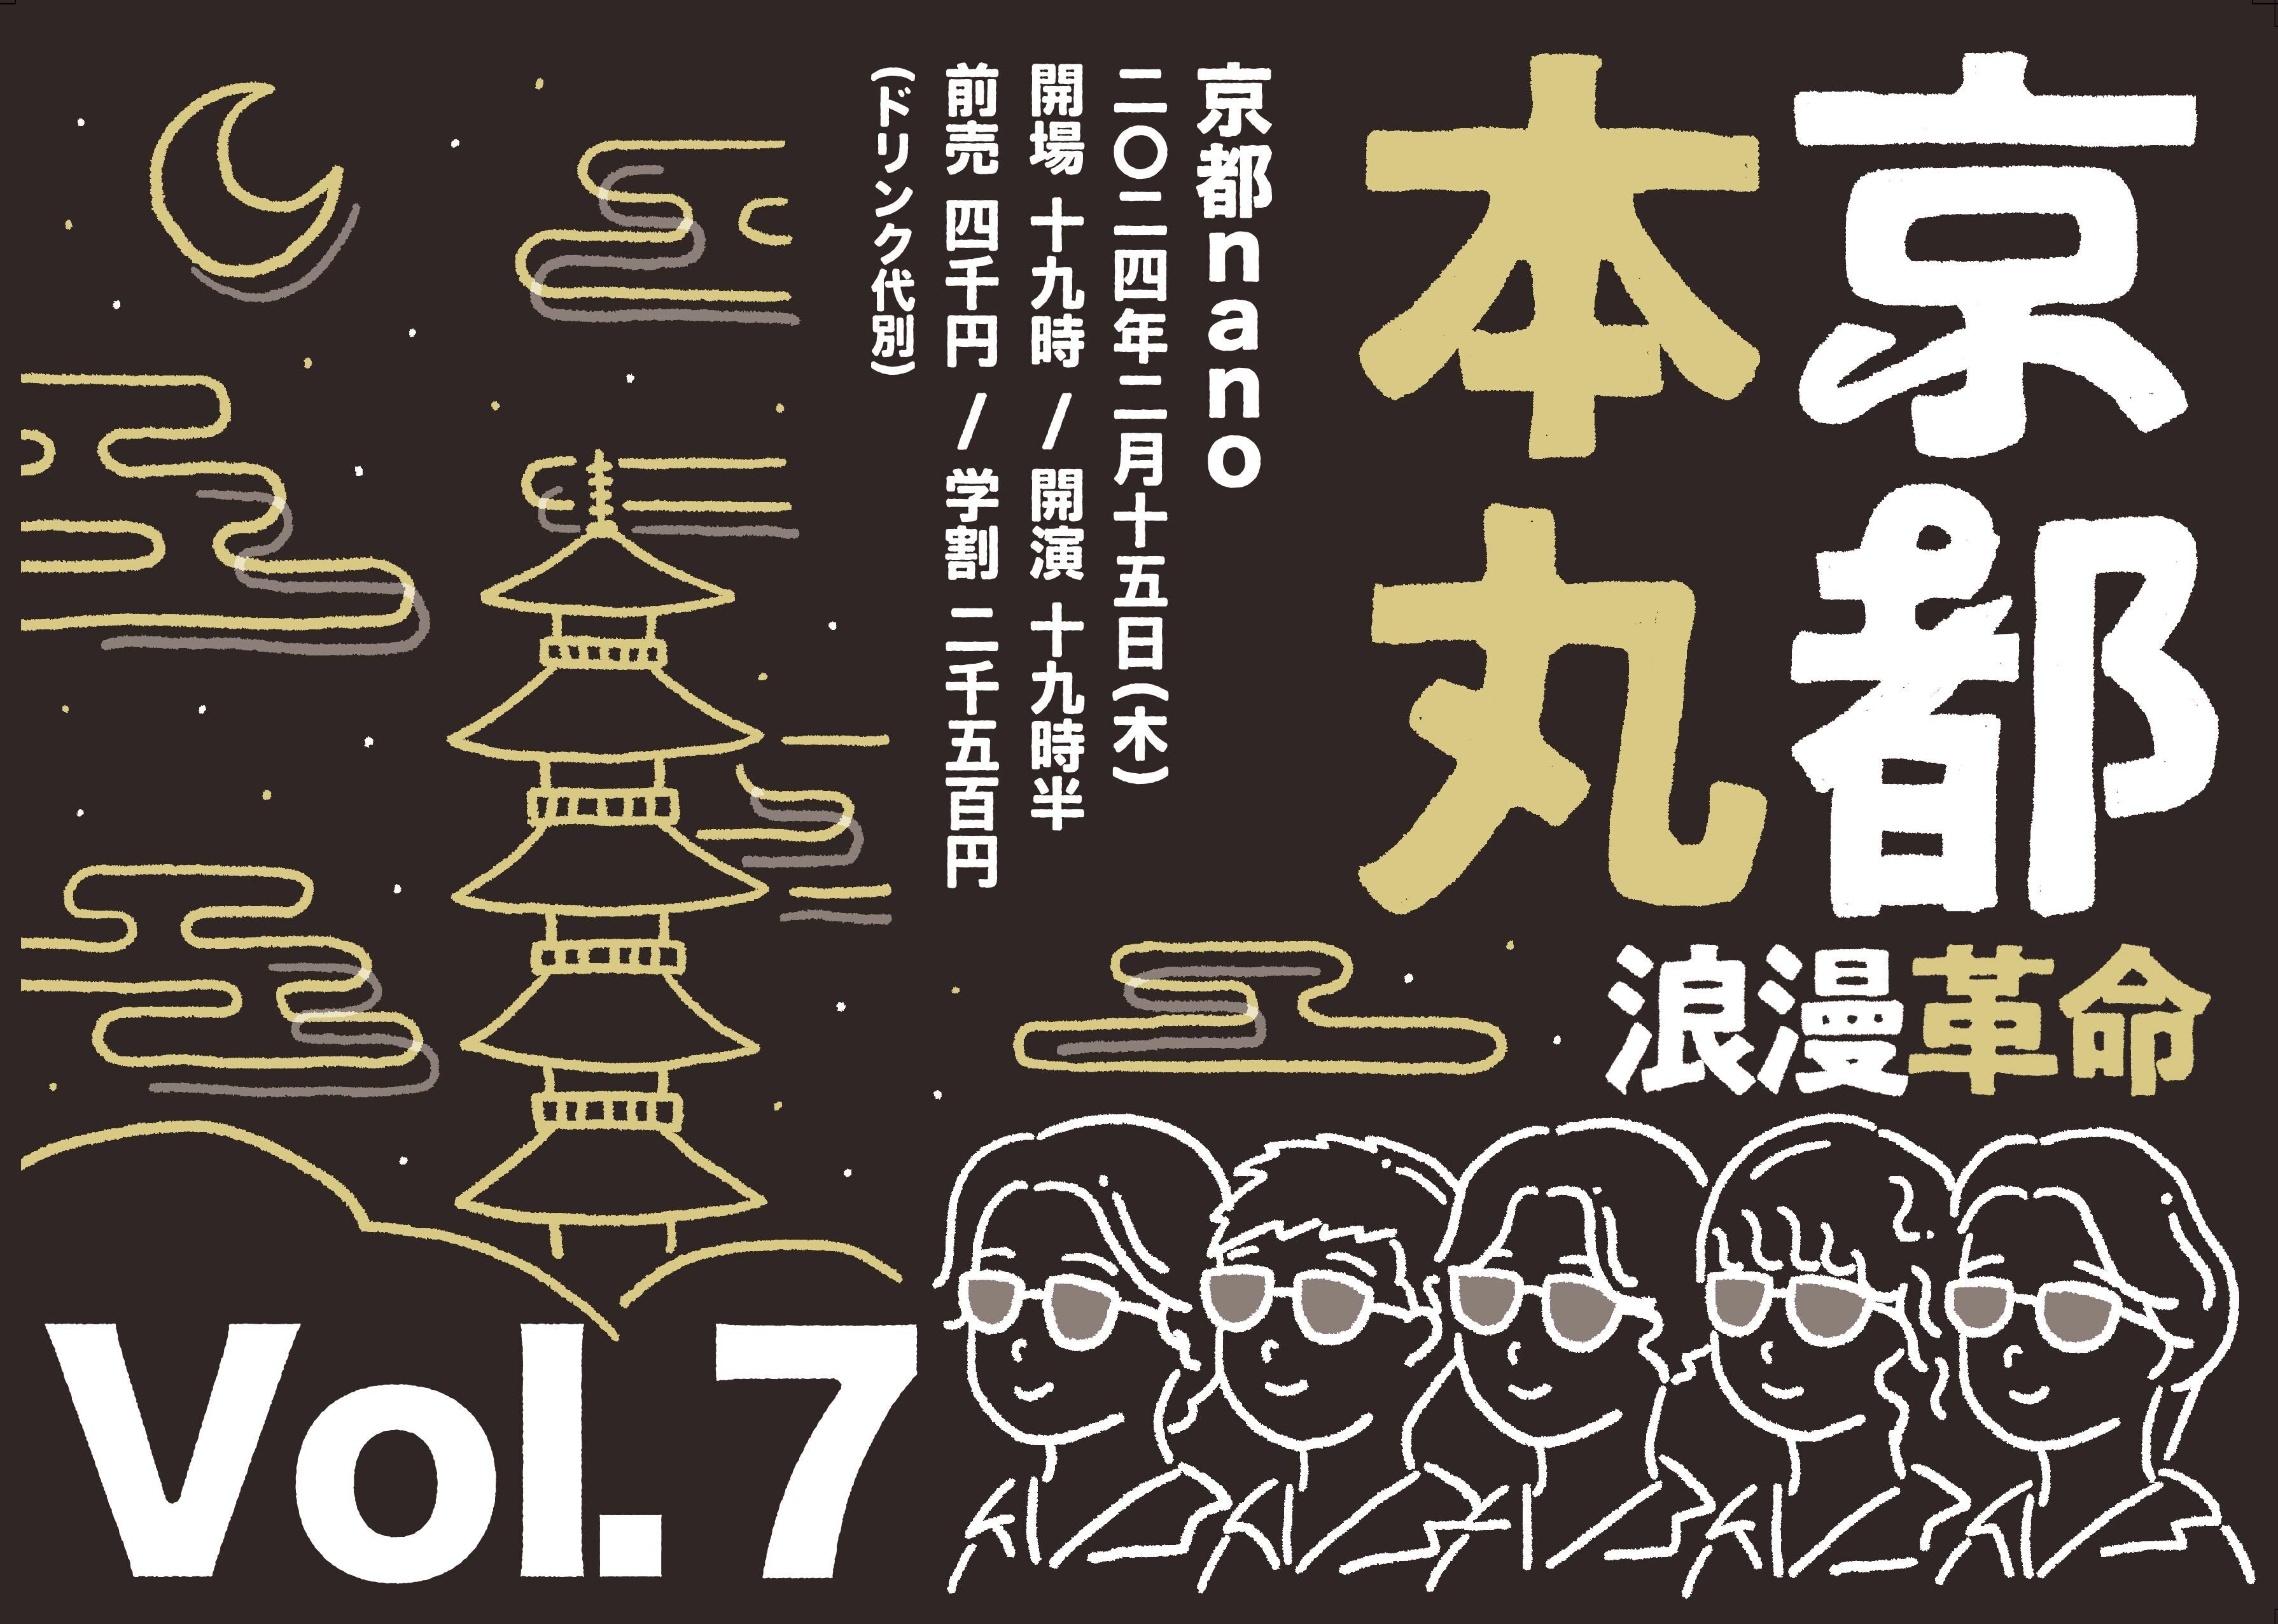 2月15日(木) ナノ20周年月間第10夜『京都本丸vol.7』京都nano